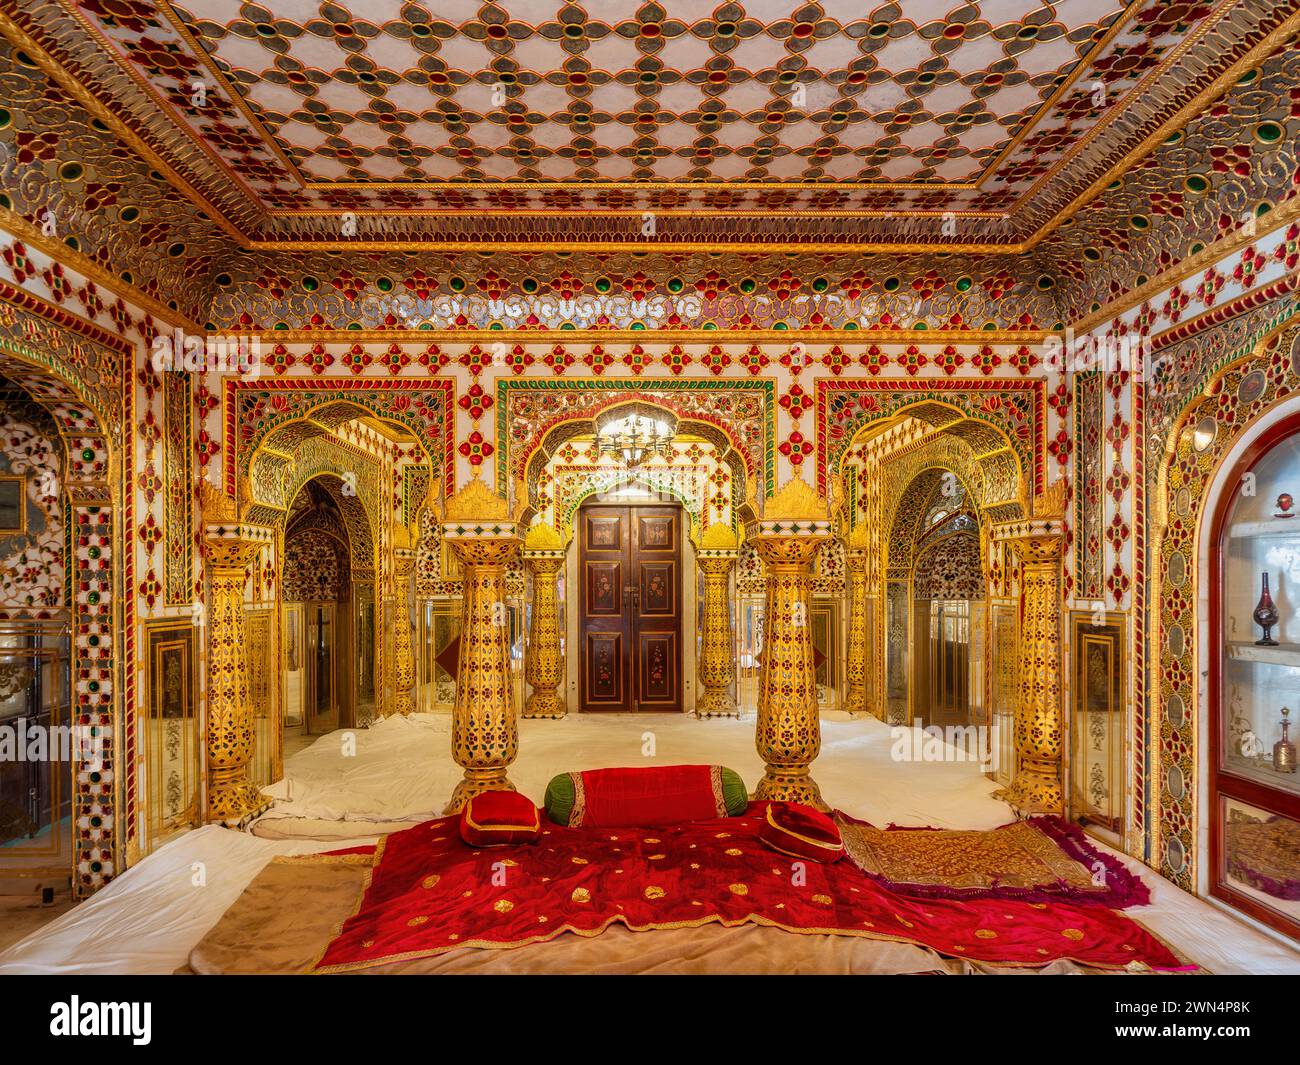 La storica sala Shobha Niwas, riccamente decorata con oro e vetro, presso il Palazzo della città di Jaipur nel Rajasthan, in India. Foto Stock